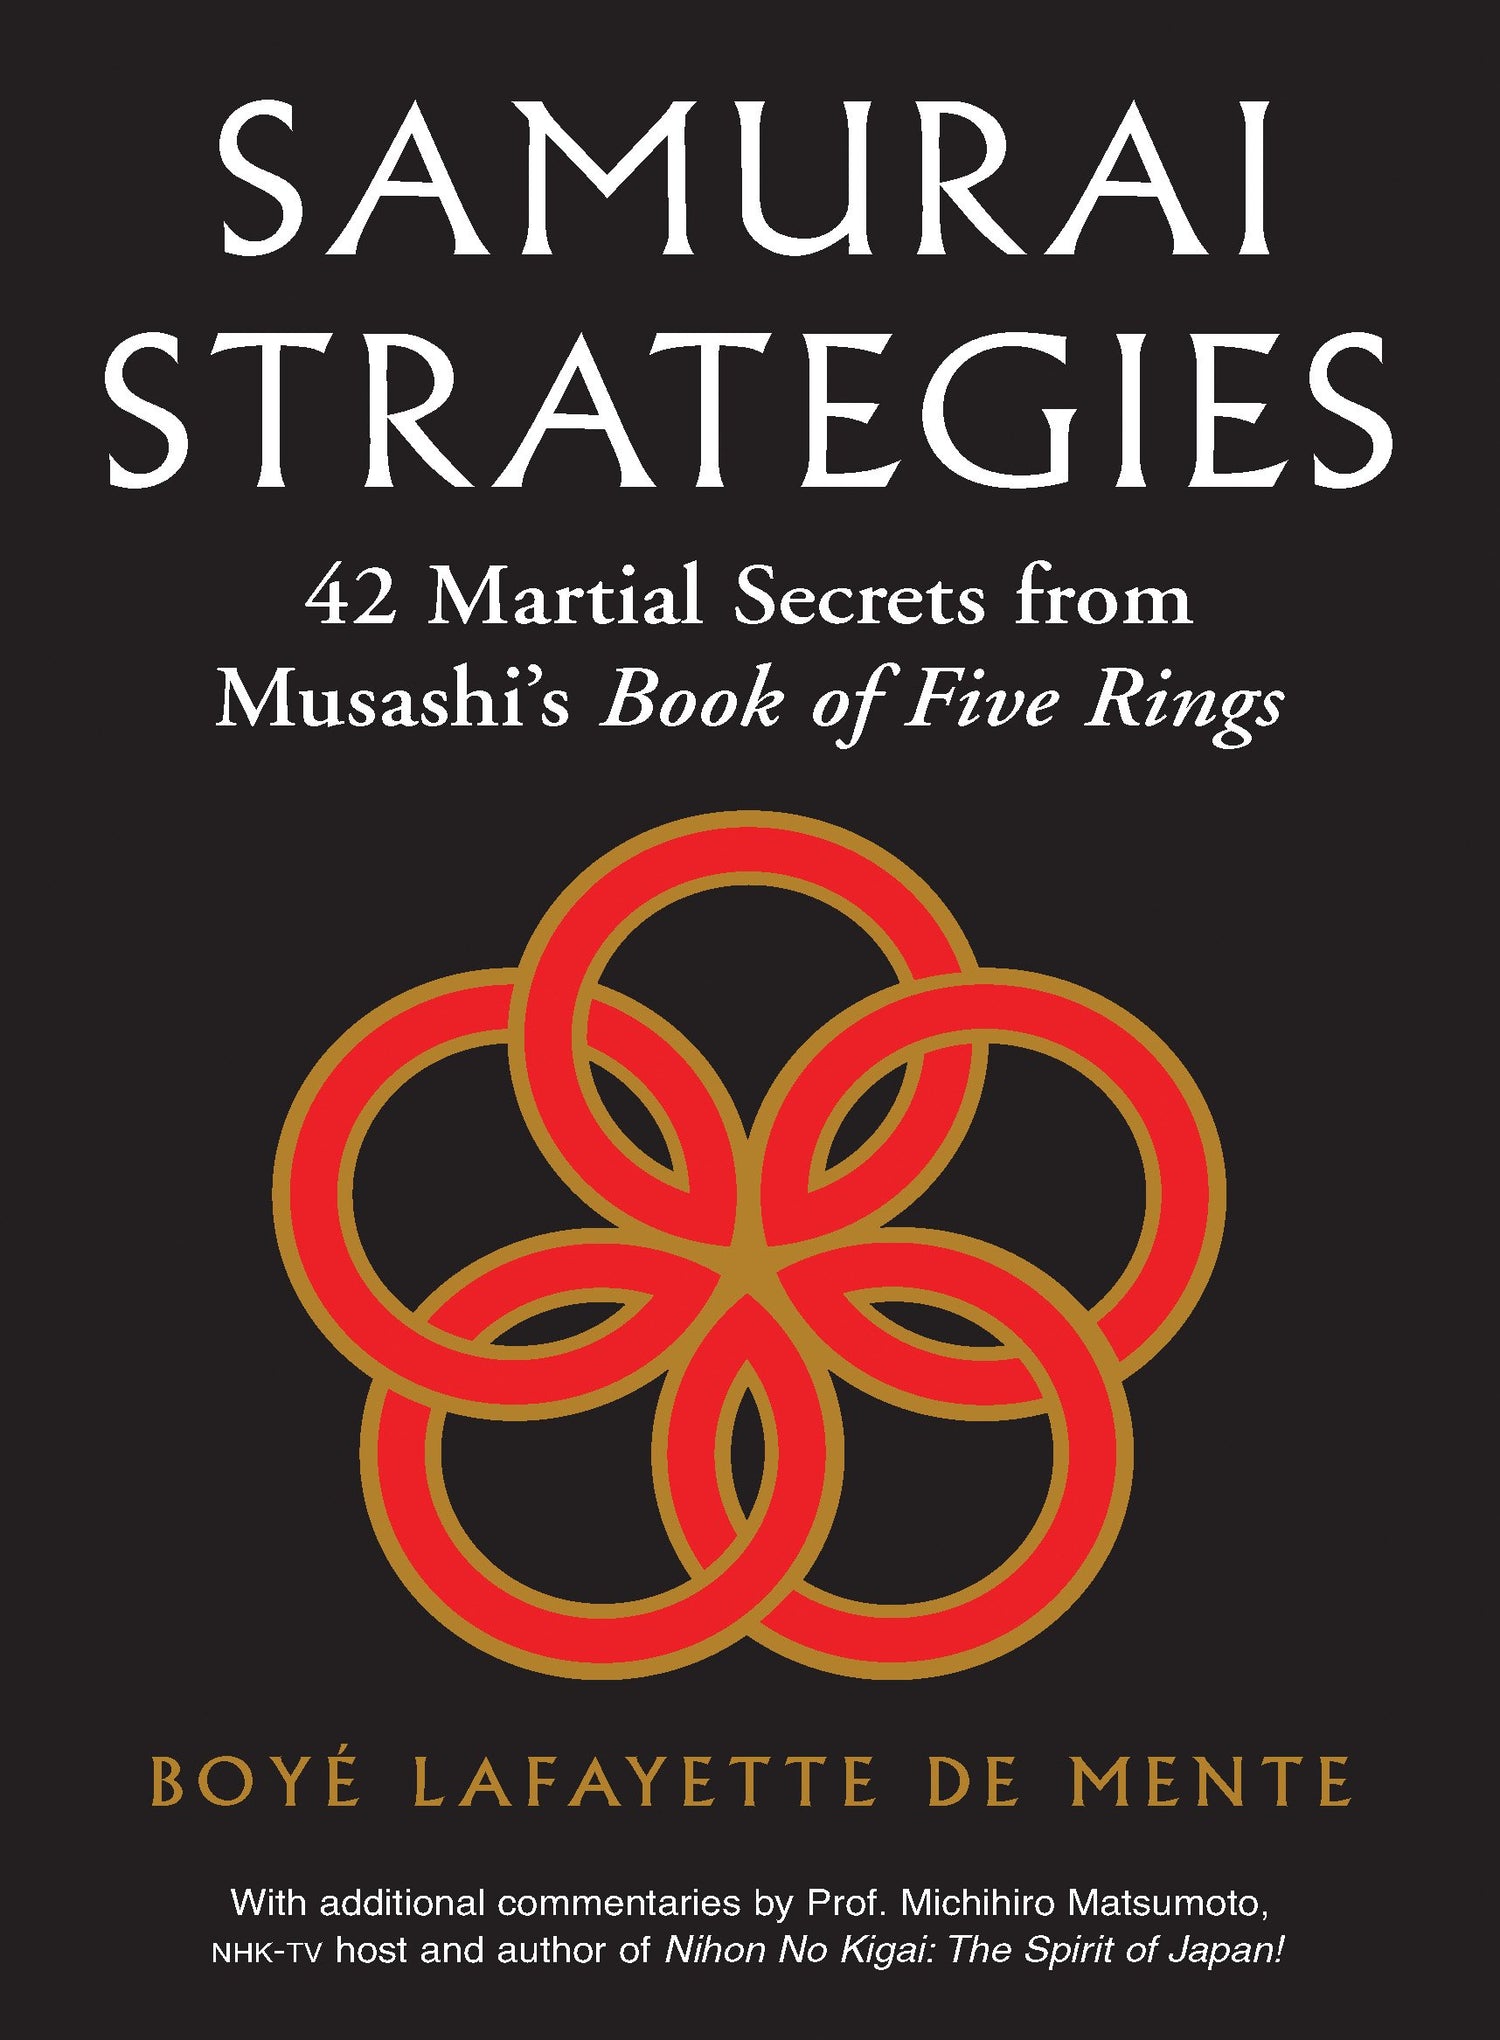 Estrategias samuráis: 42 secretos marciales del libro de los cinco anillos de Musashi (usado)